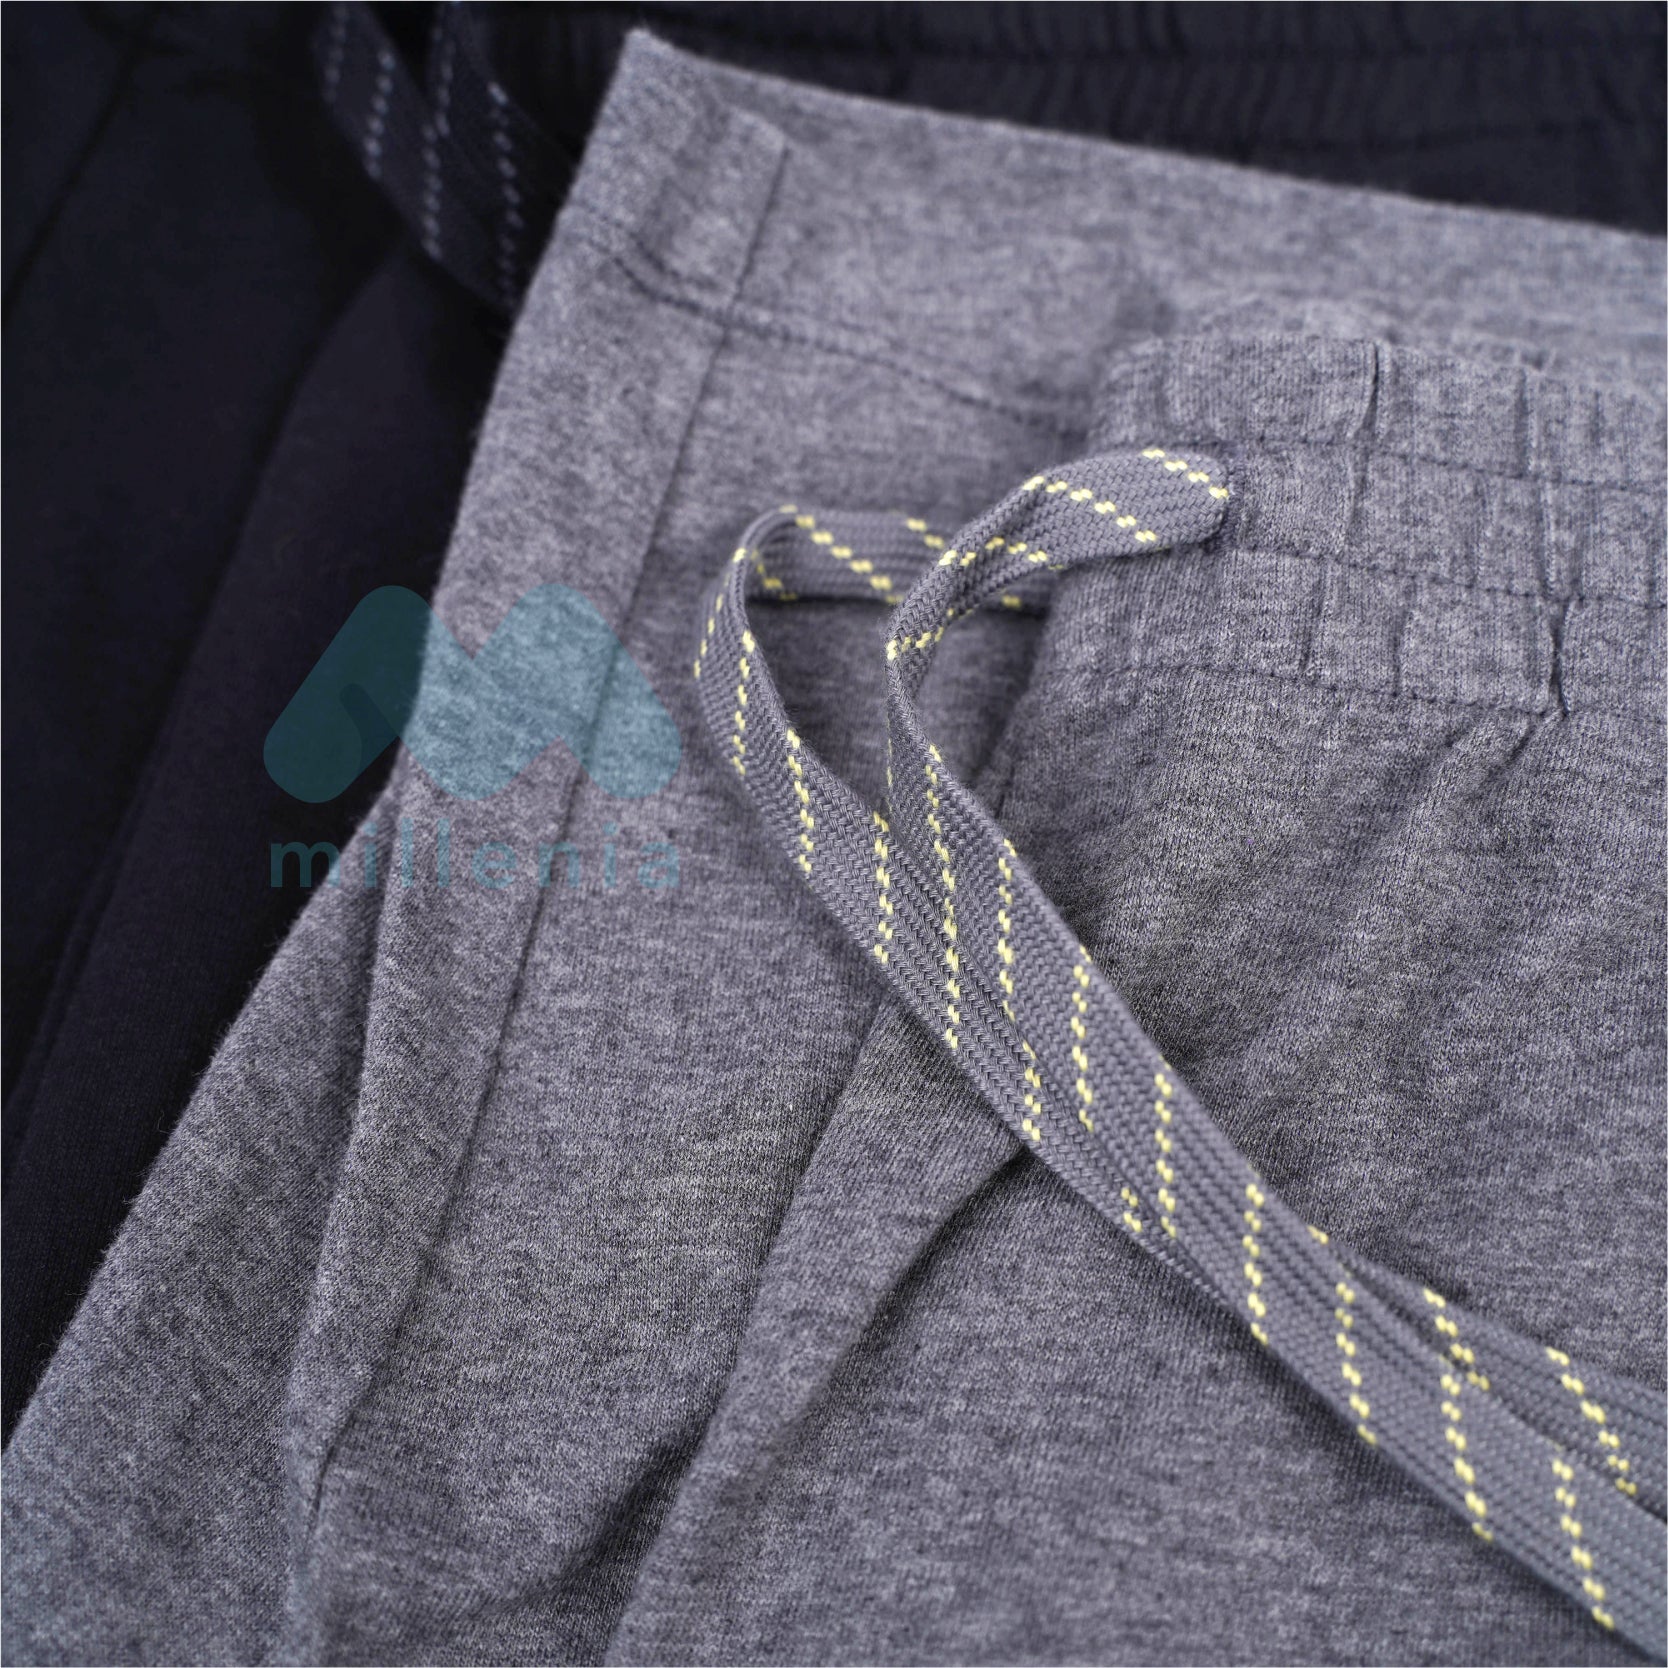 Celana Pendek Pria Bahan Adem Tersedia 3 Warna (MO-UNSM 01)